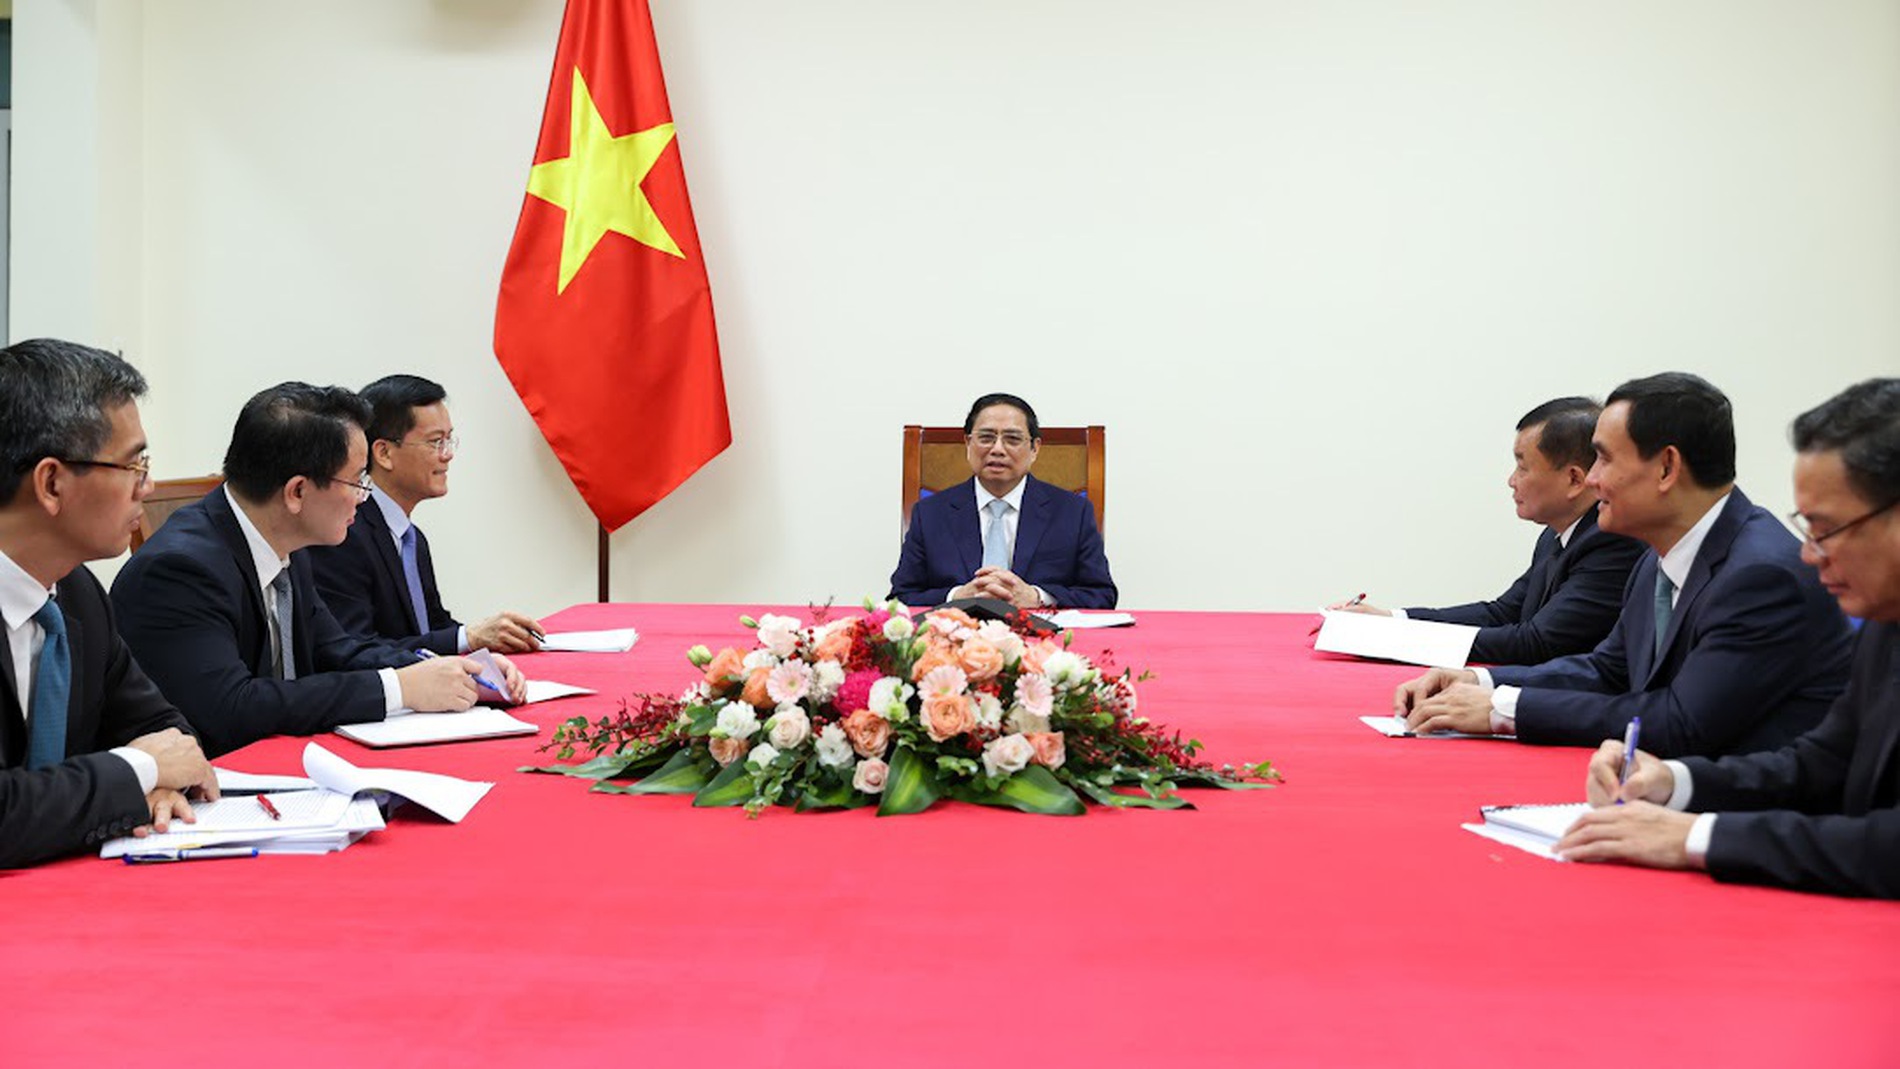 Kinh tế đóng vai trò trụ cột trong quan hệ đối tác chiến lược Việt Nam - Pháp